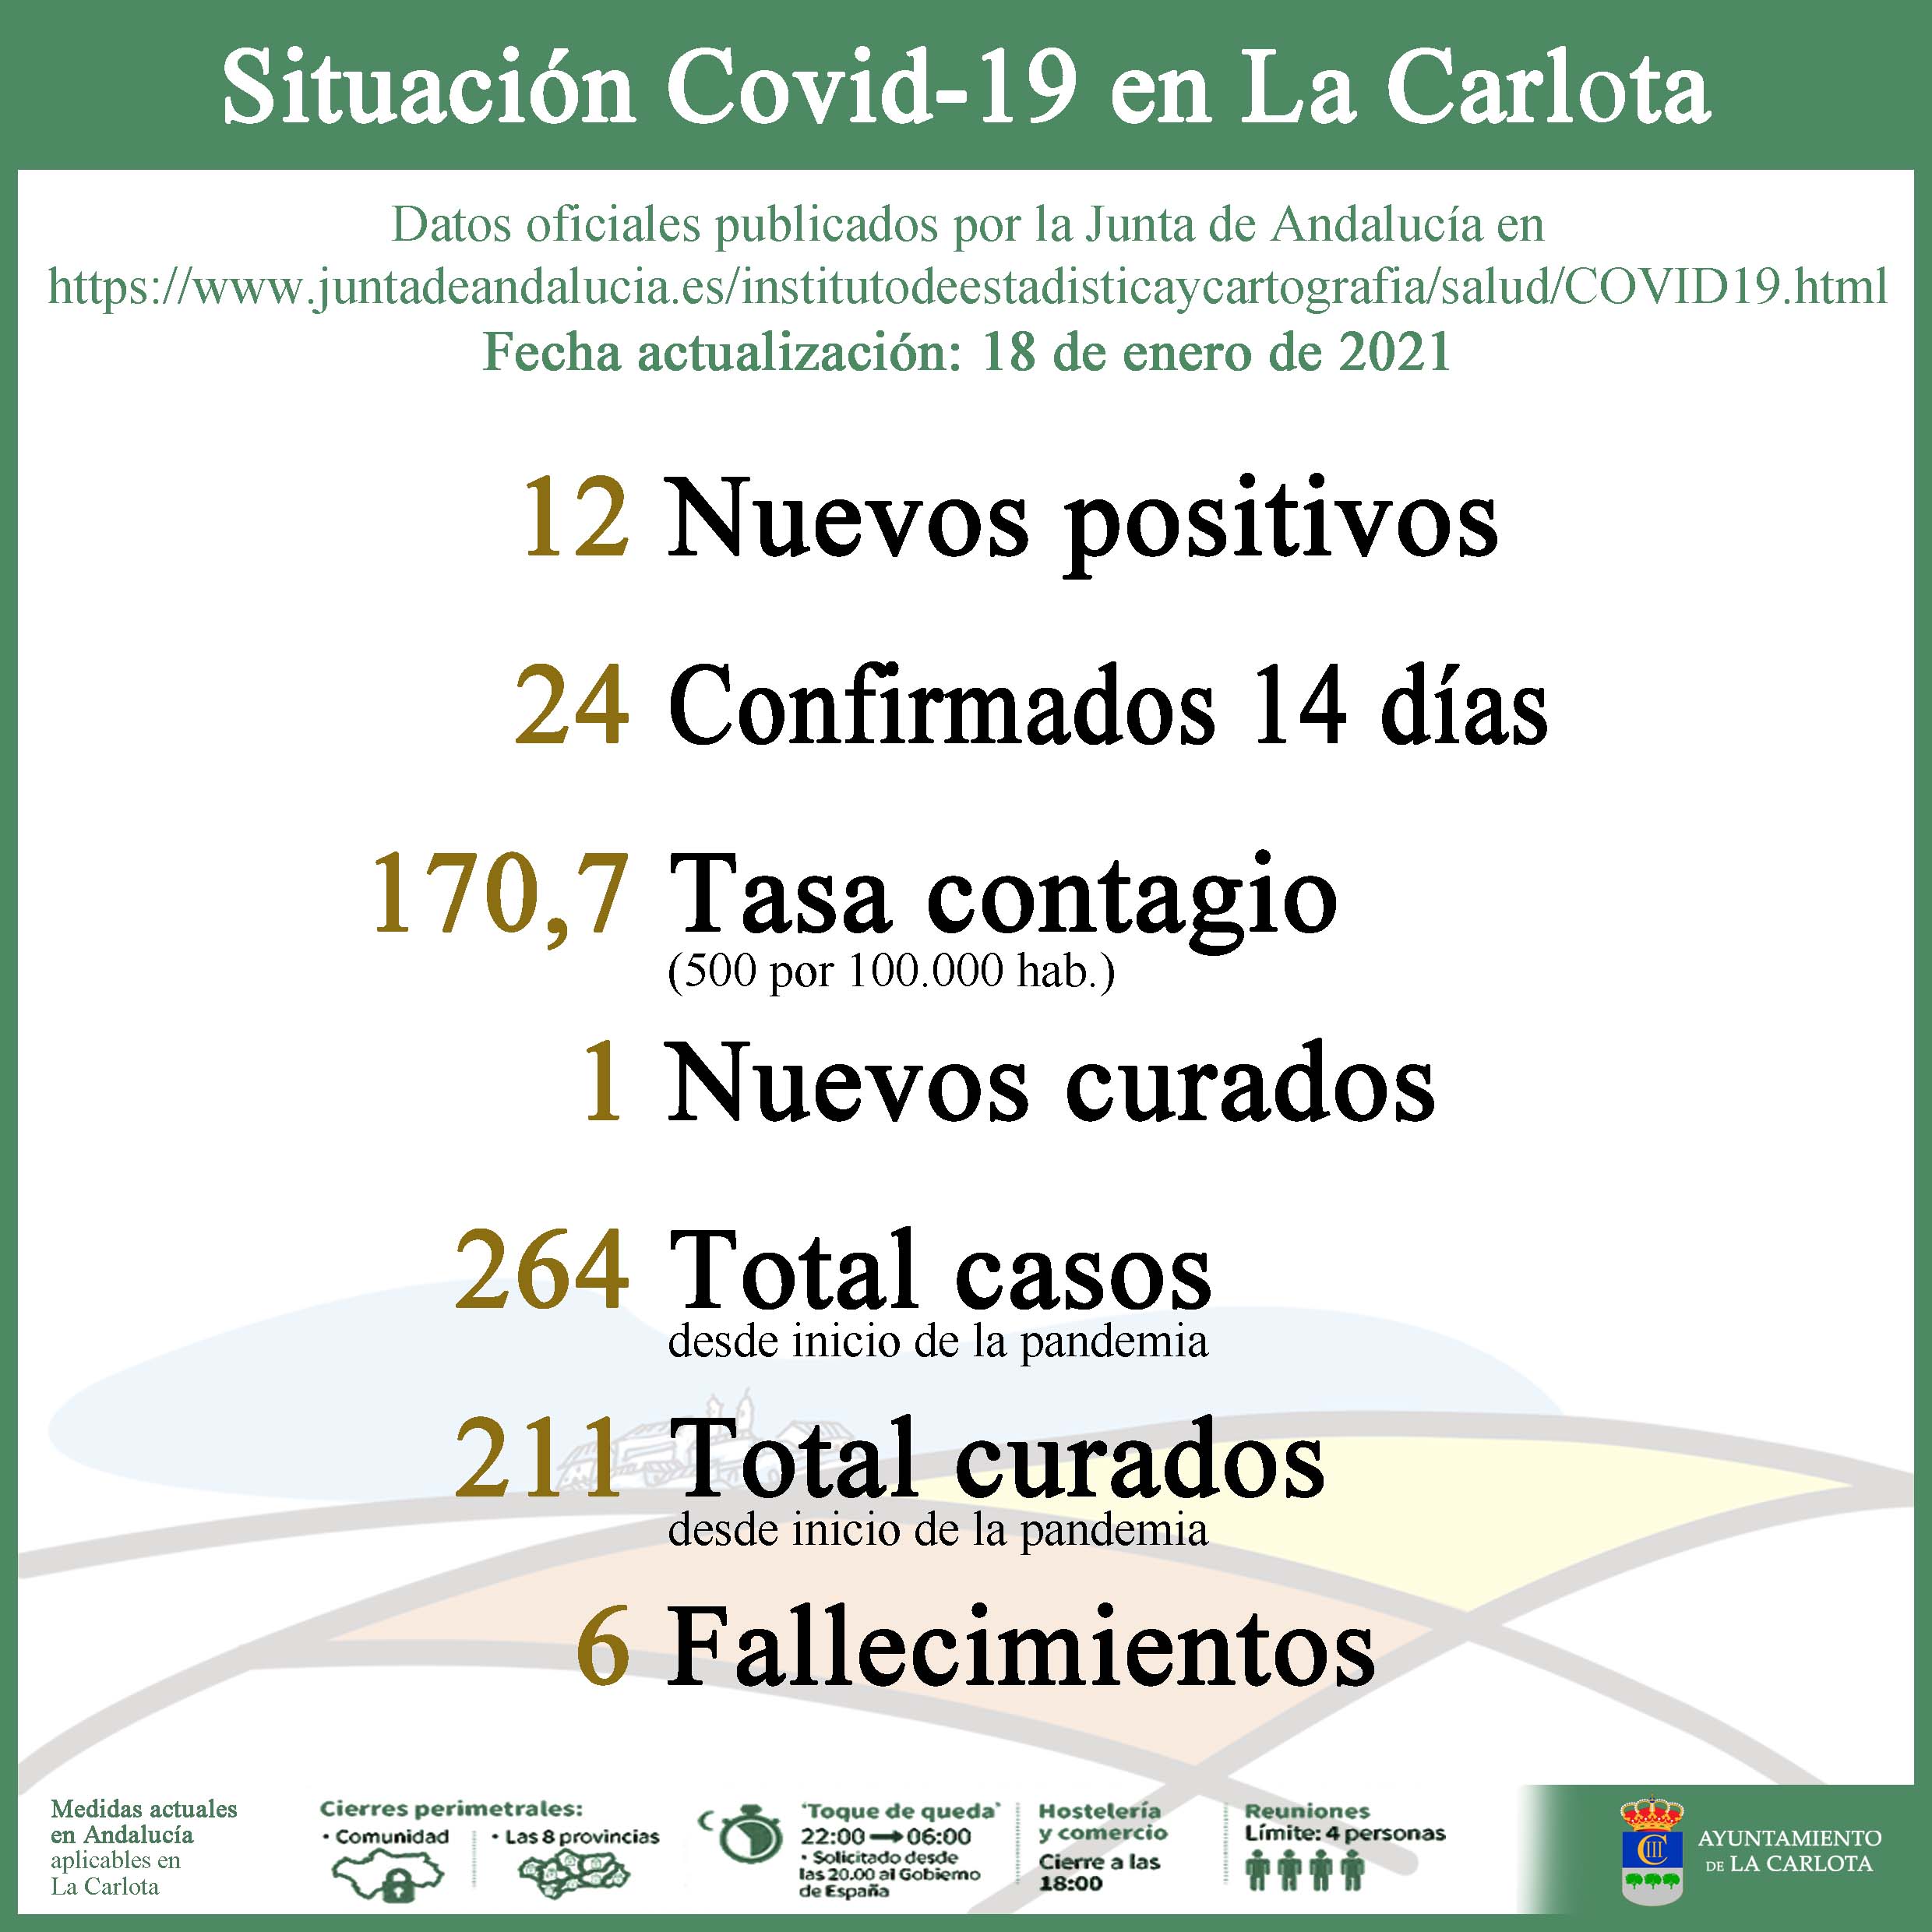 SITUACIÓN COVID-19 EN LA CARLOTA  1